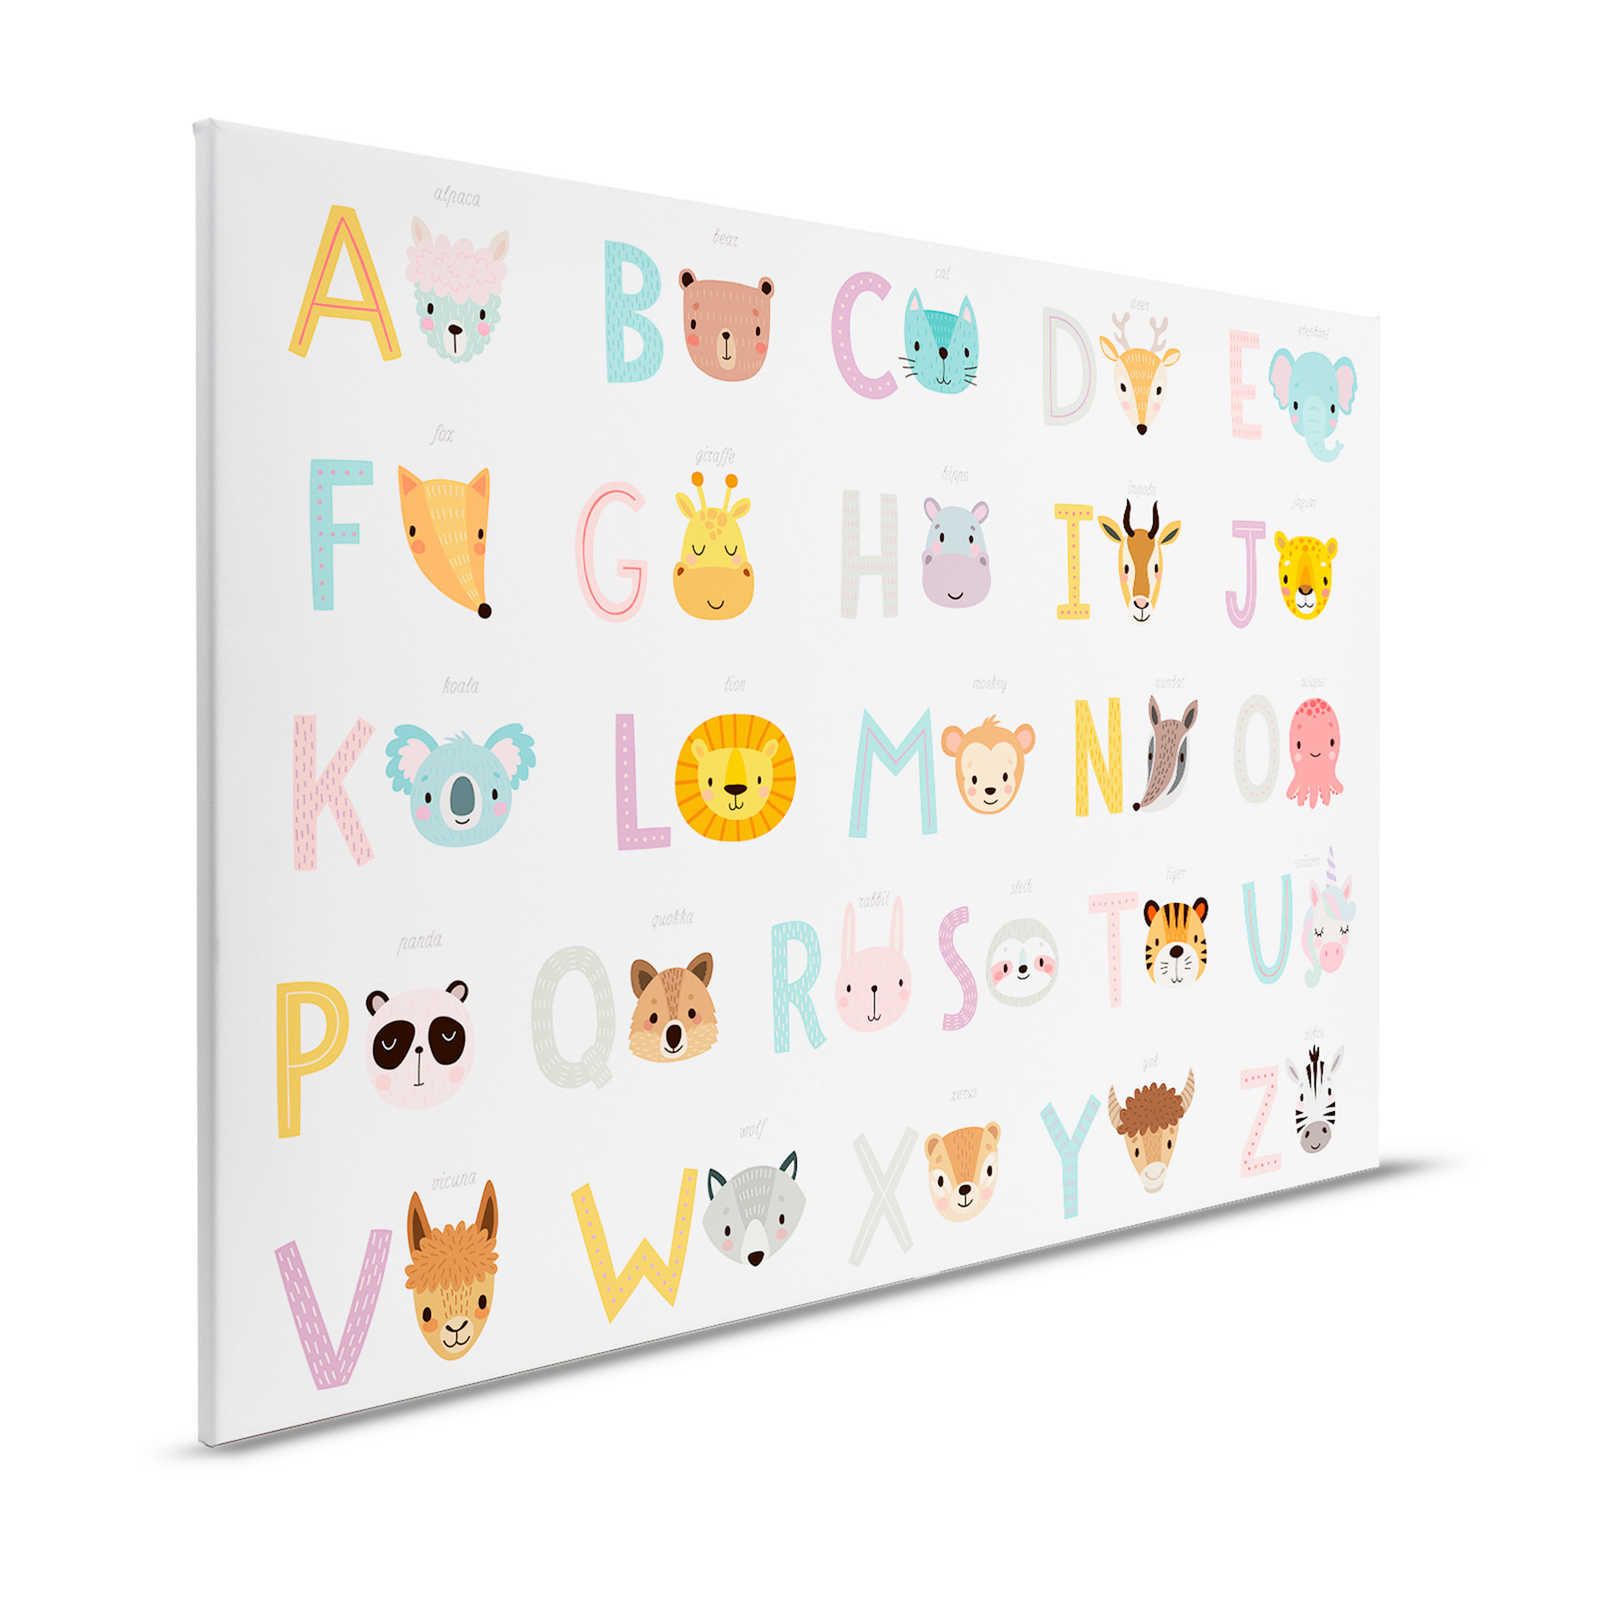         Leinwand ABC mit Tieren und Tiernamen – 120 cm x 80 cm
    